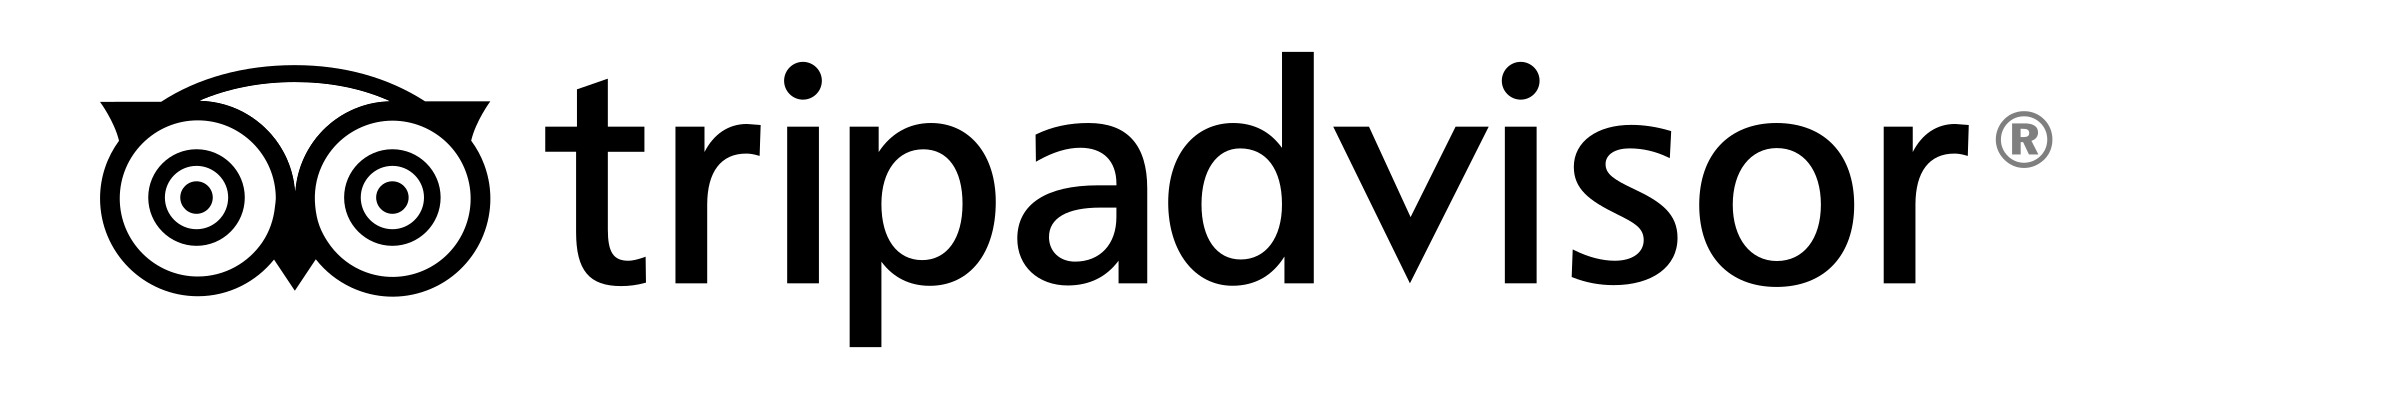 tripadvisor-logo-black-transparent